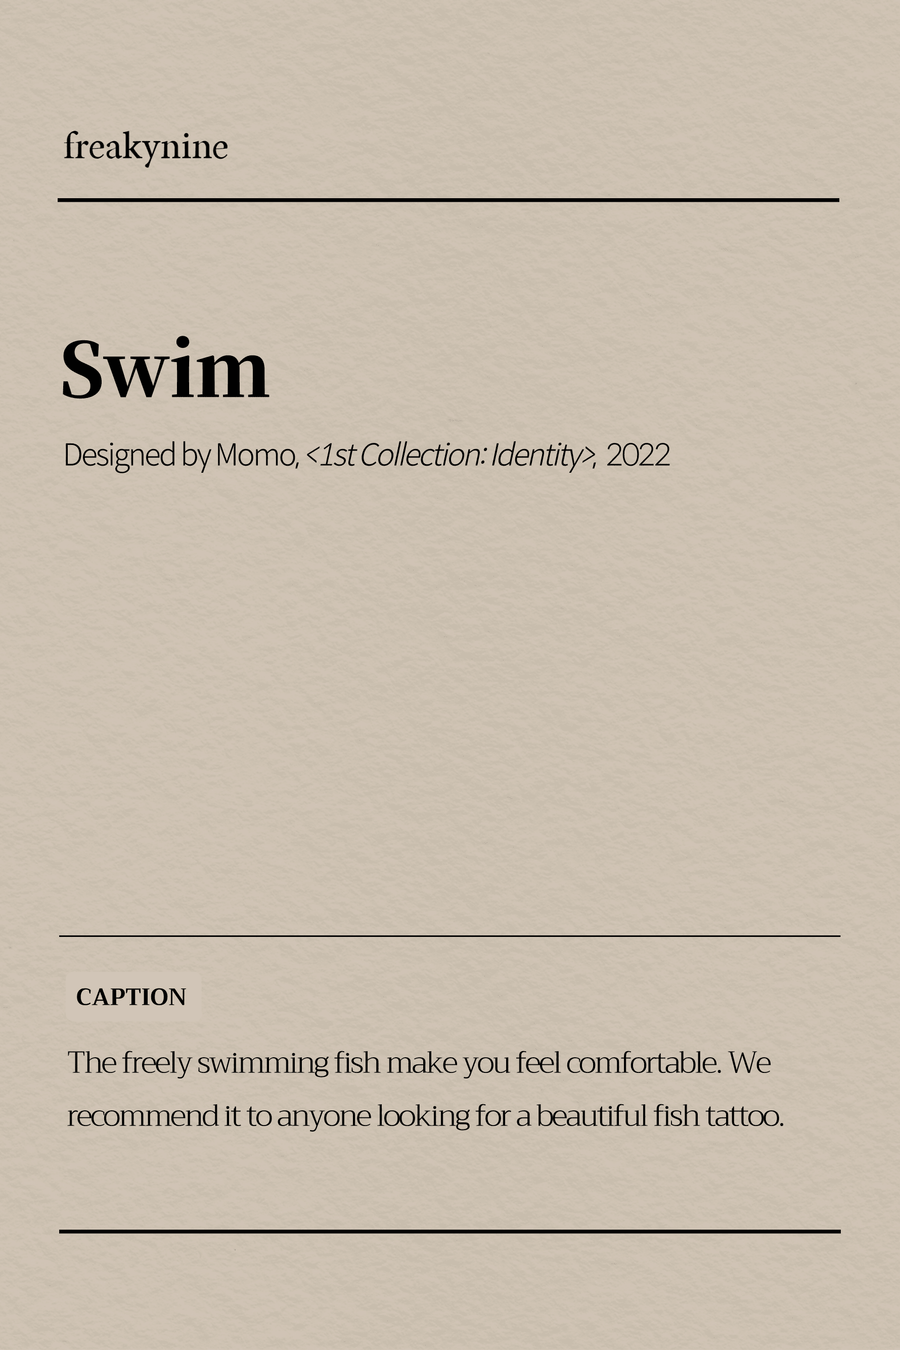 (Momo) Swim (2EA) - freakynine